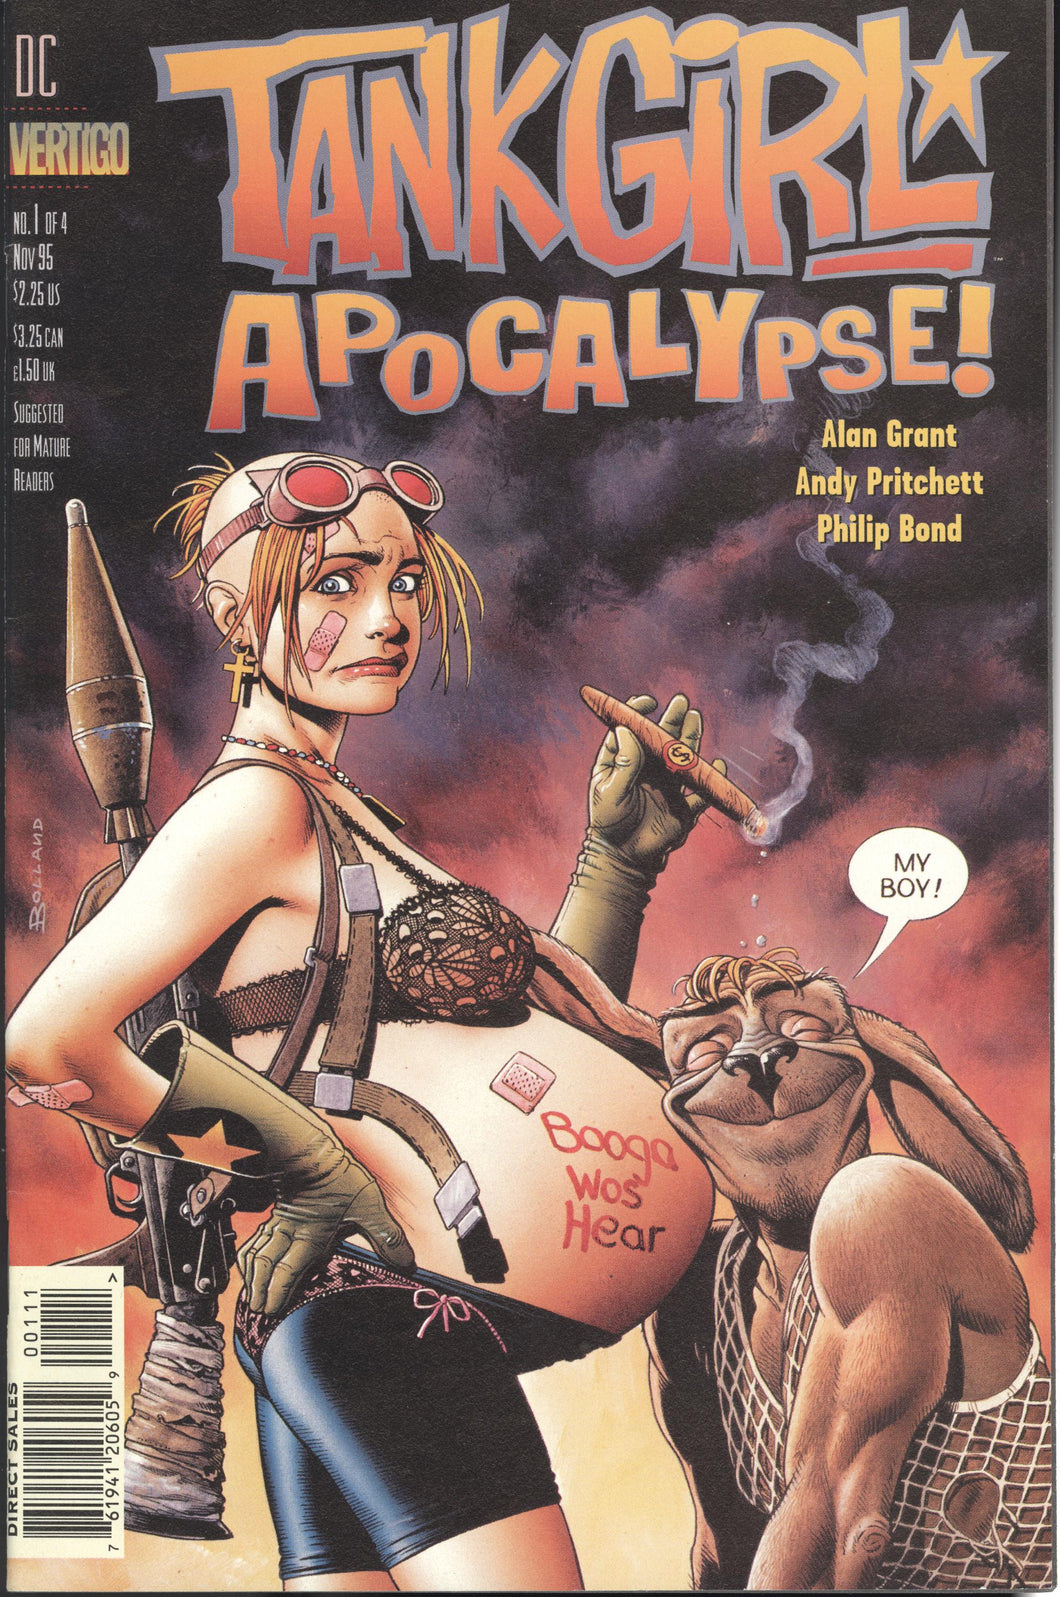 TANK GIRL APOCALYPSE #1-4 (1995 DC/Vertigo) COMPLETE SET Full Run Alan Grant